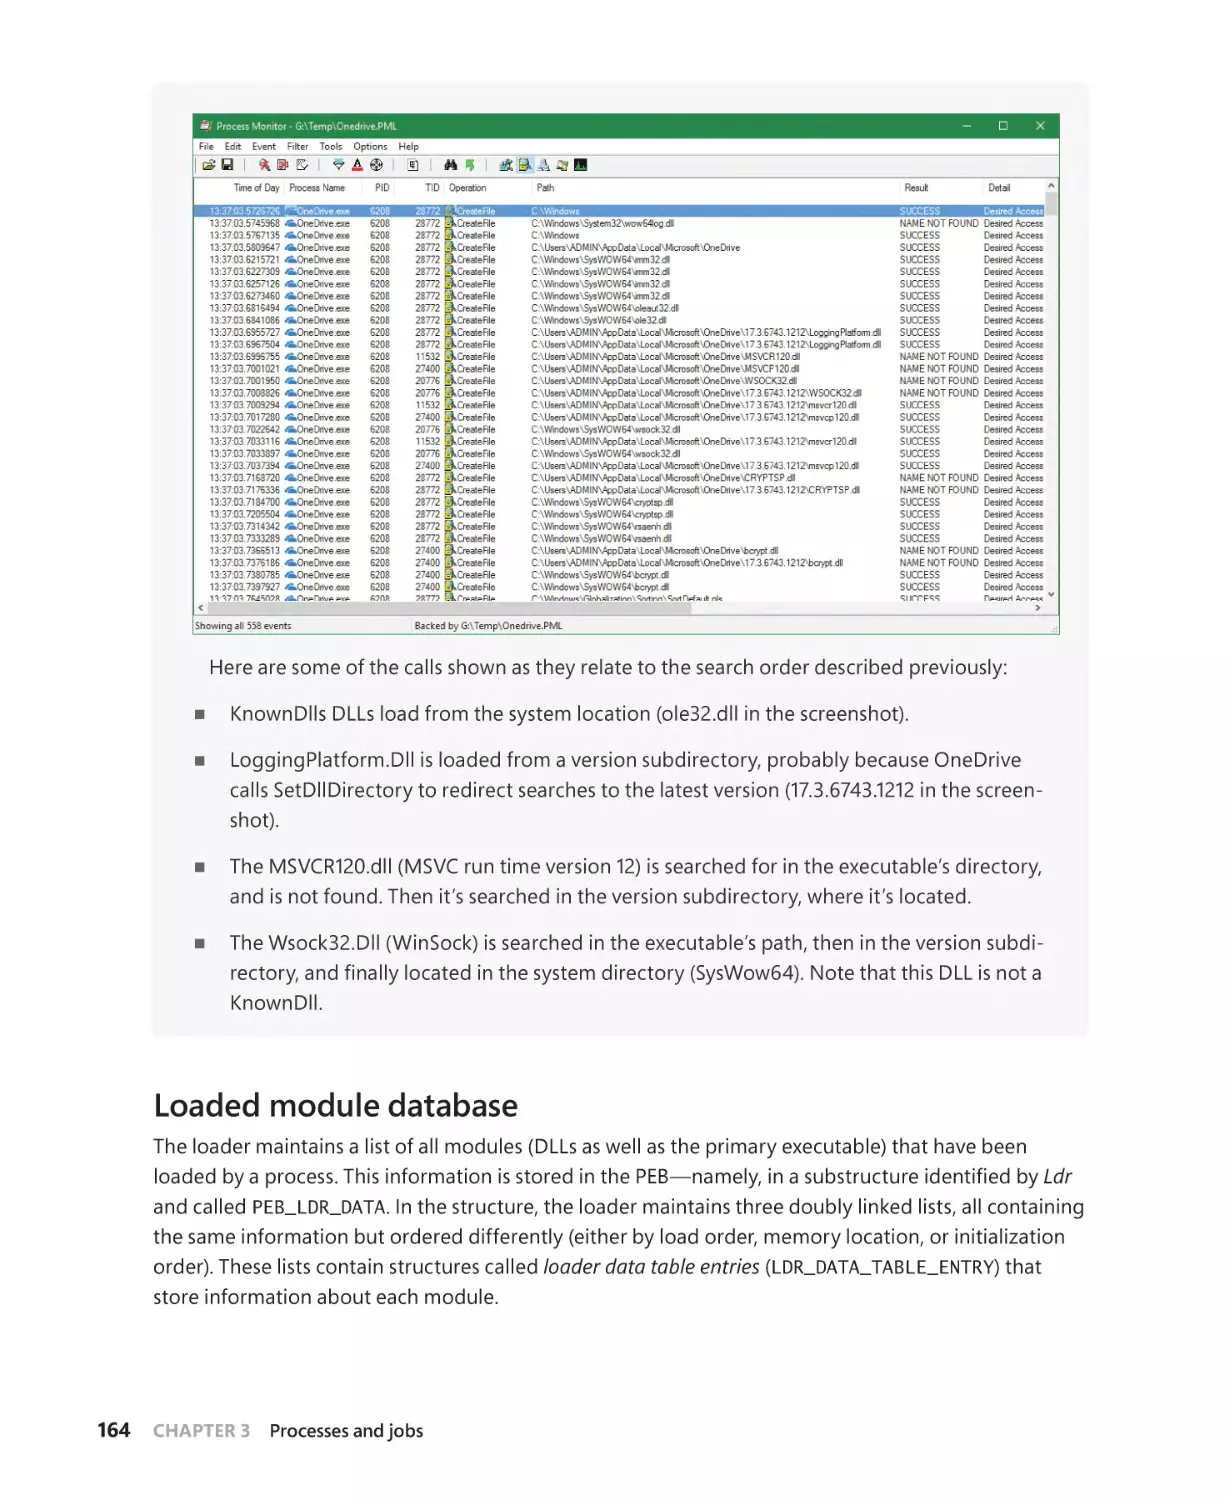 Loaded module database